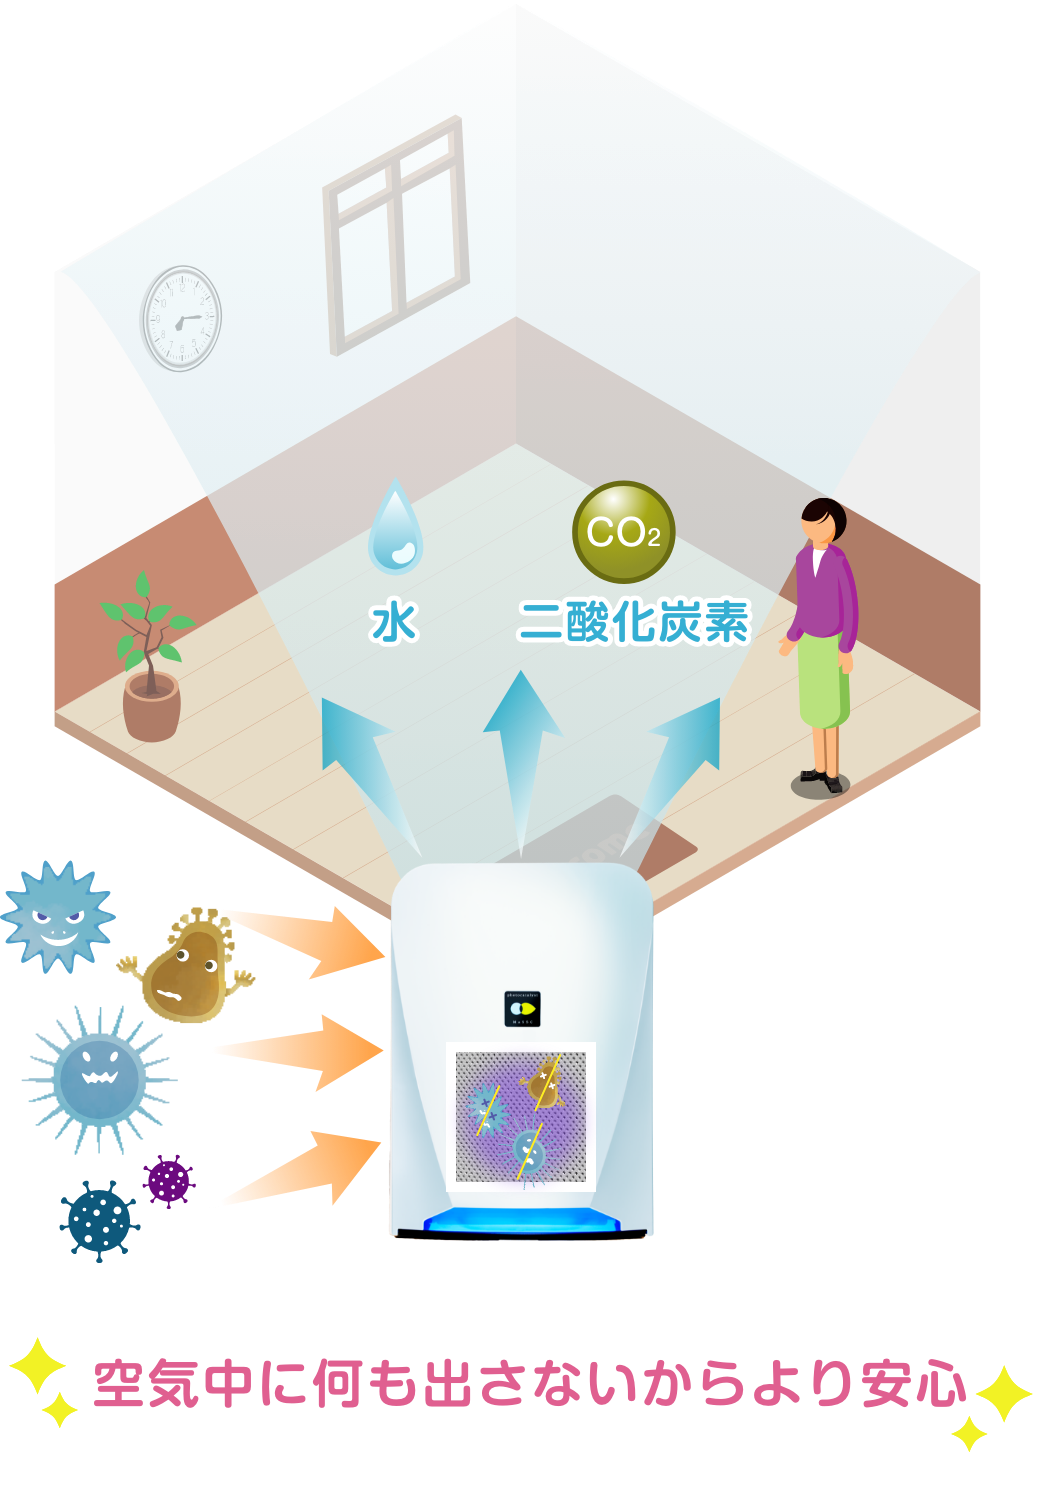 光除菌」のブルーデオS型：8畳空間を除菌・消臭。そしてコンパクト